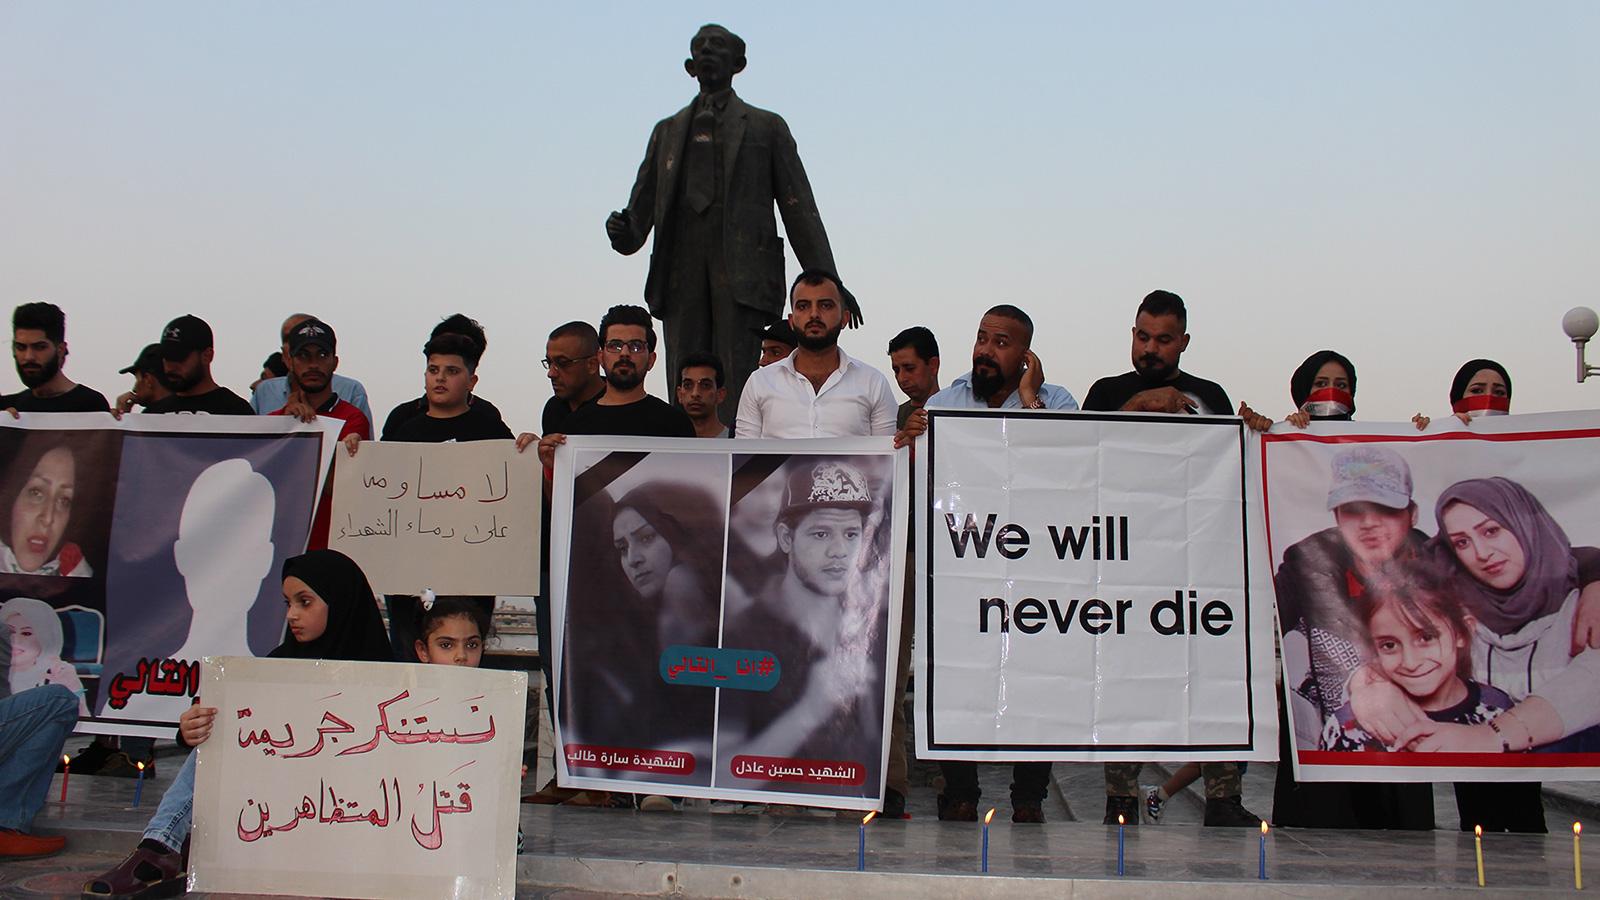 ائتلاف النصر: إستمرار إغتيال الناشطين يهدد الأمن والوحدة الوطنية